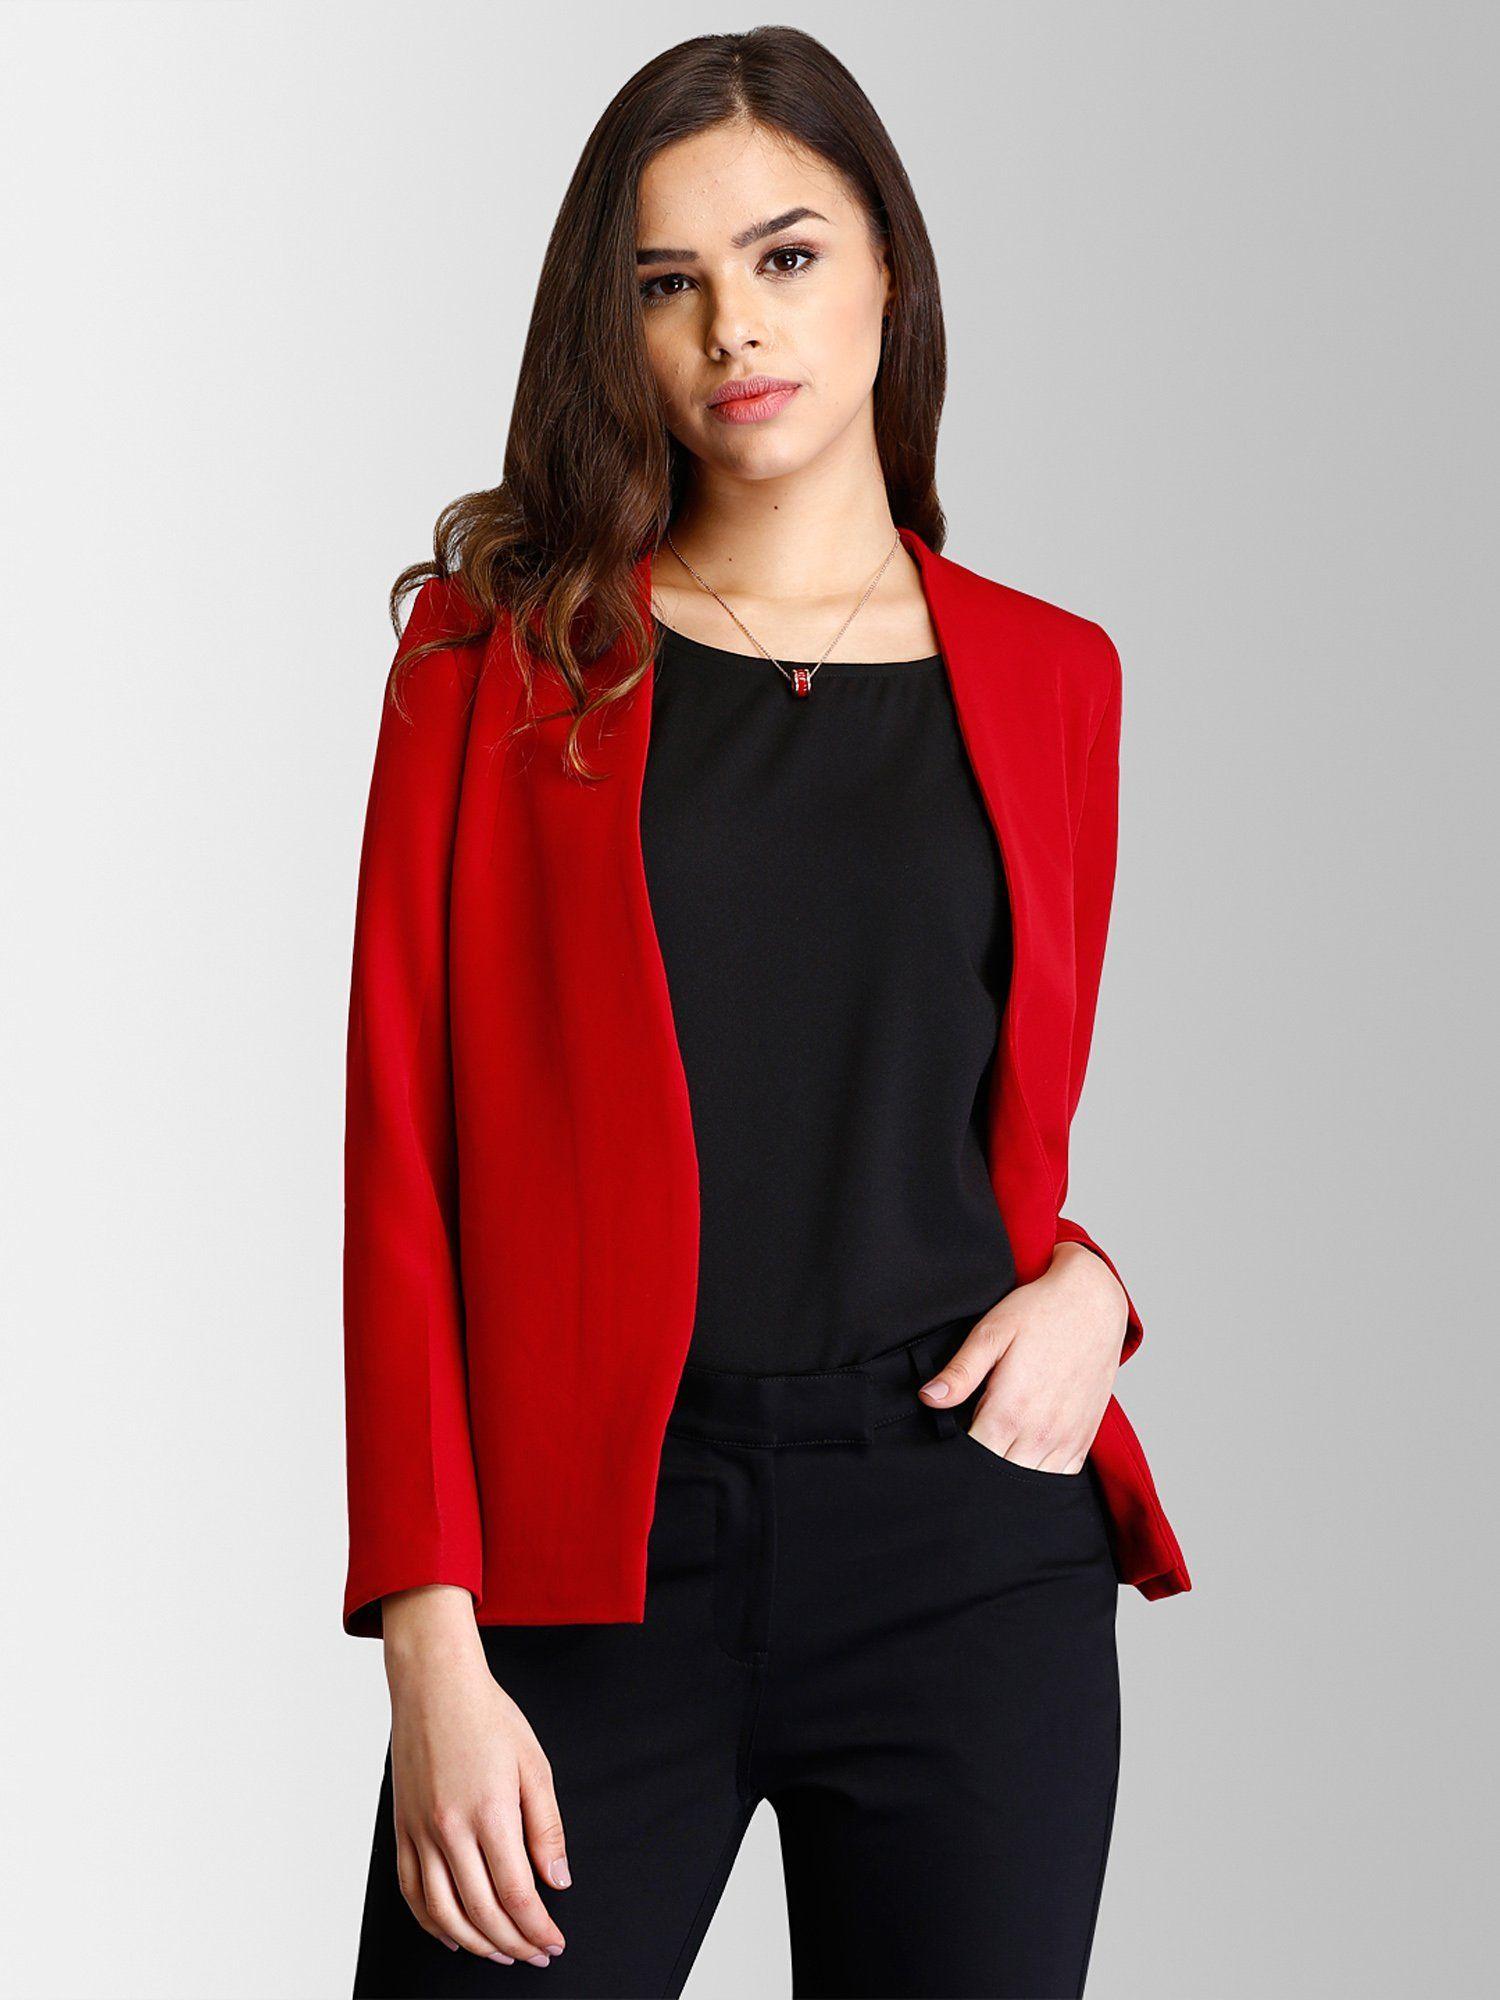 red stylish blazer